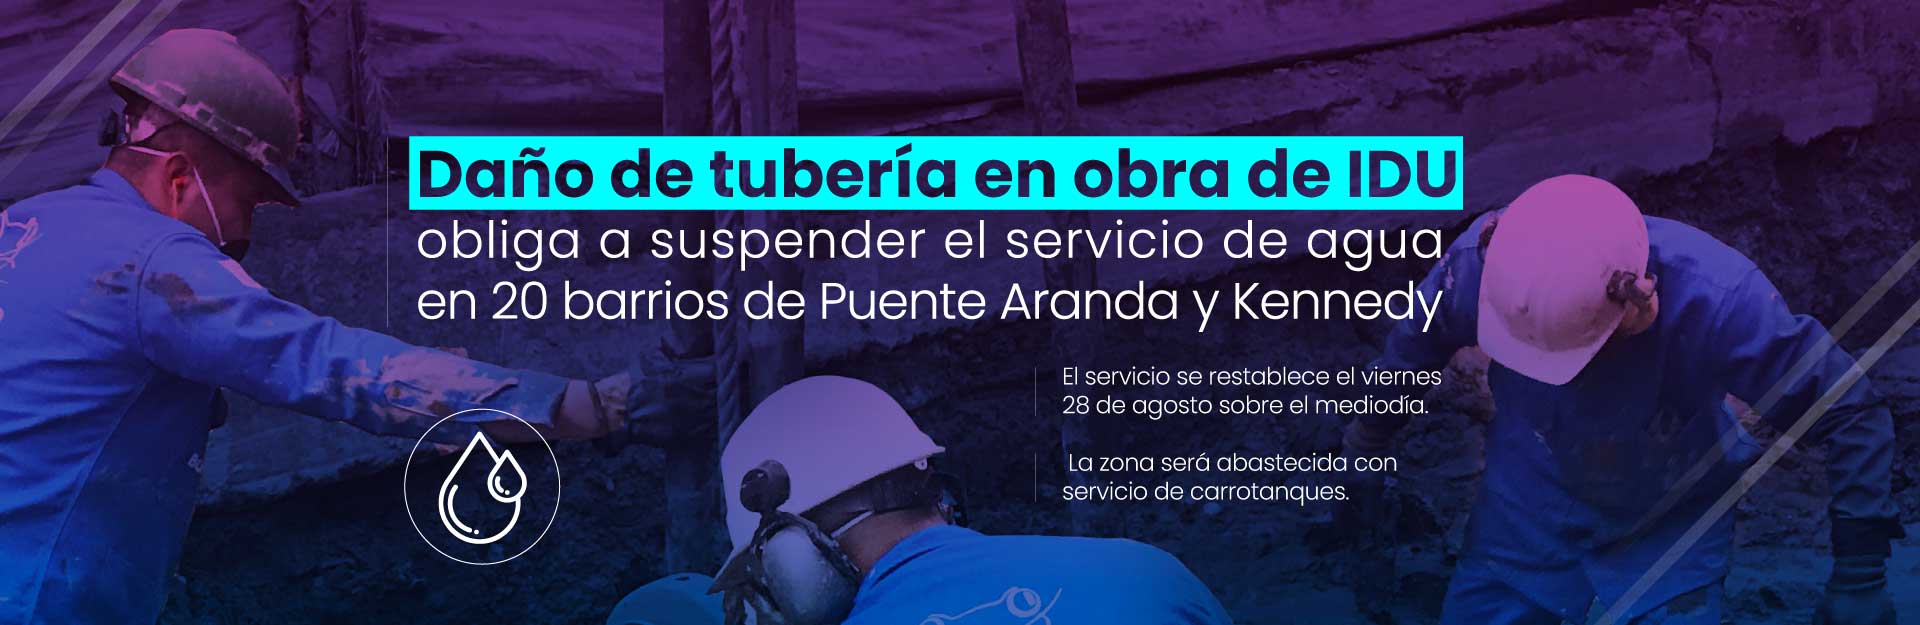 Daño de tubería en obra de IDU obliga a suspender el servicio de agua en 20 barrios de Kennedy y Puente Aranda